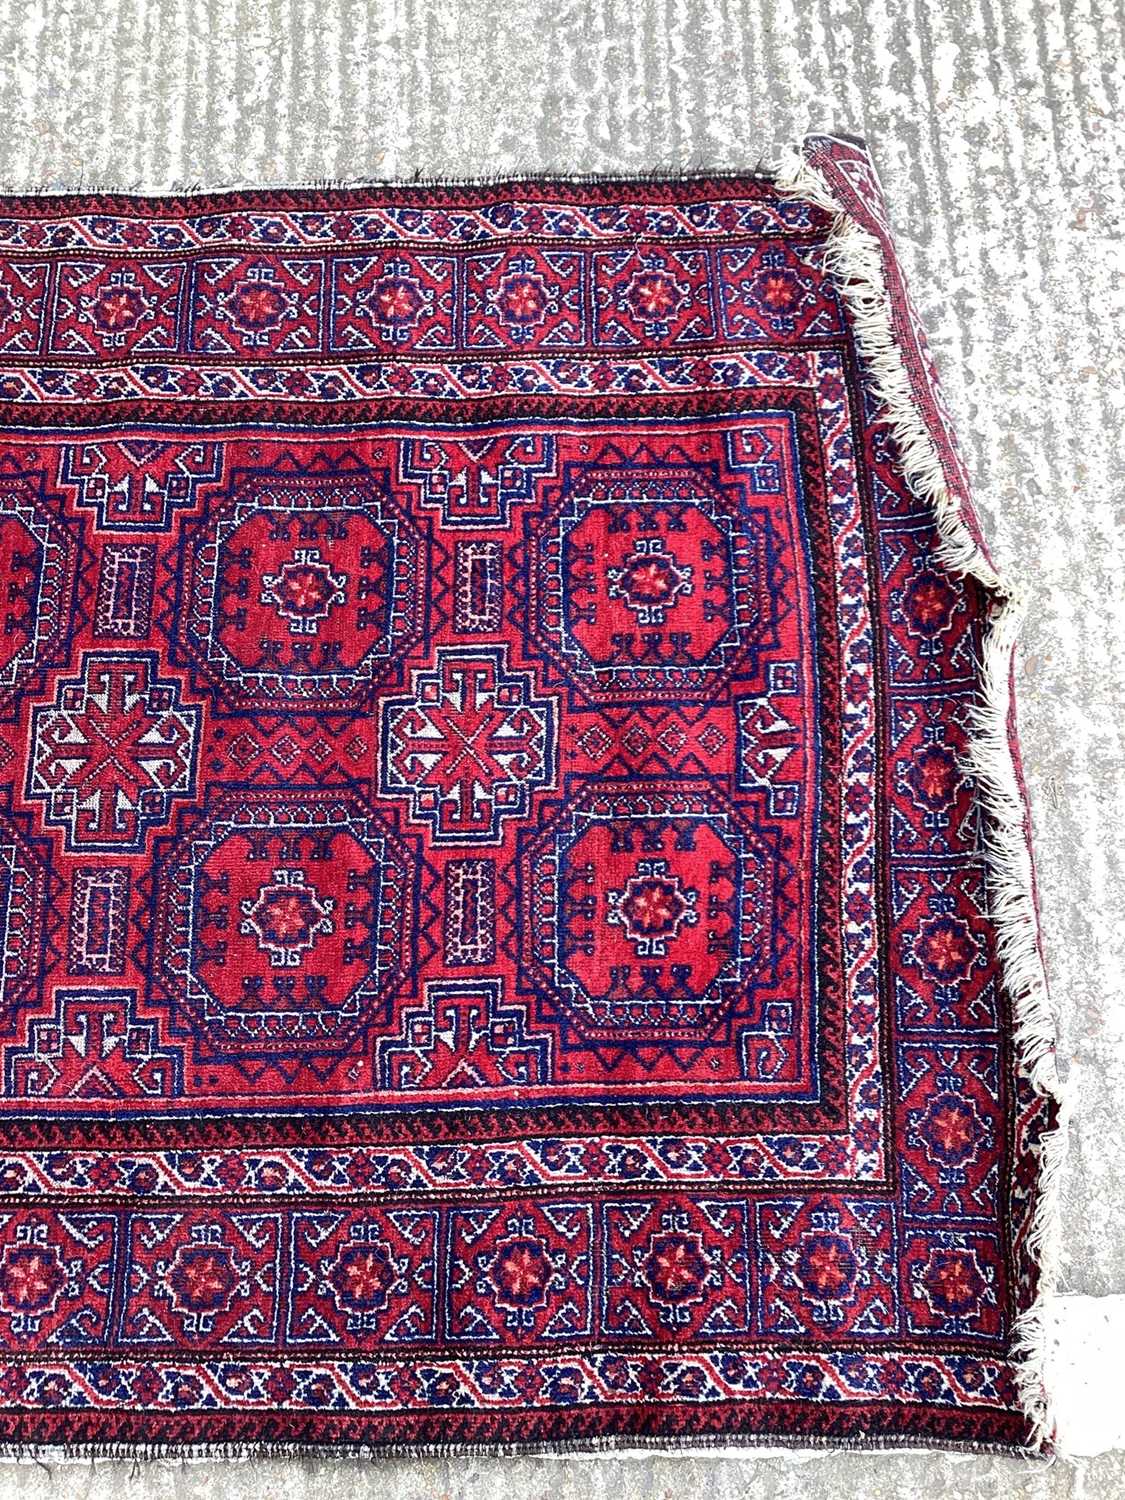 Baluchi rug 1.90m x 1.02m - Image 4 of 5